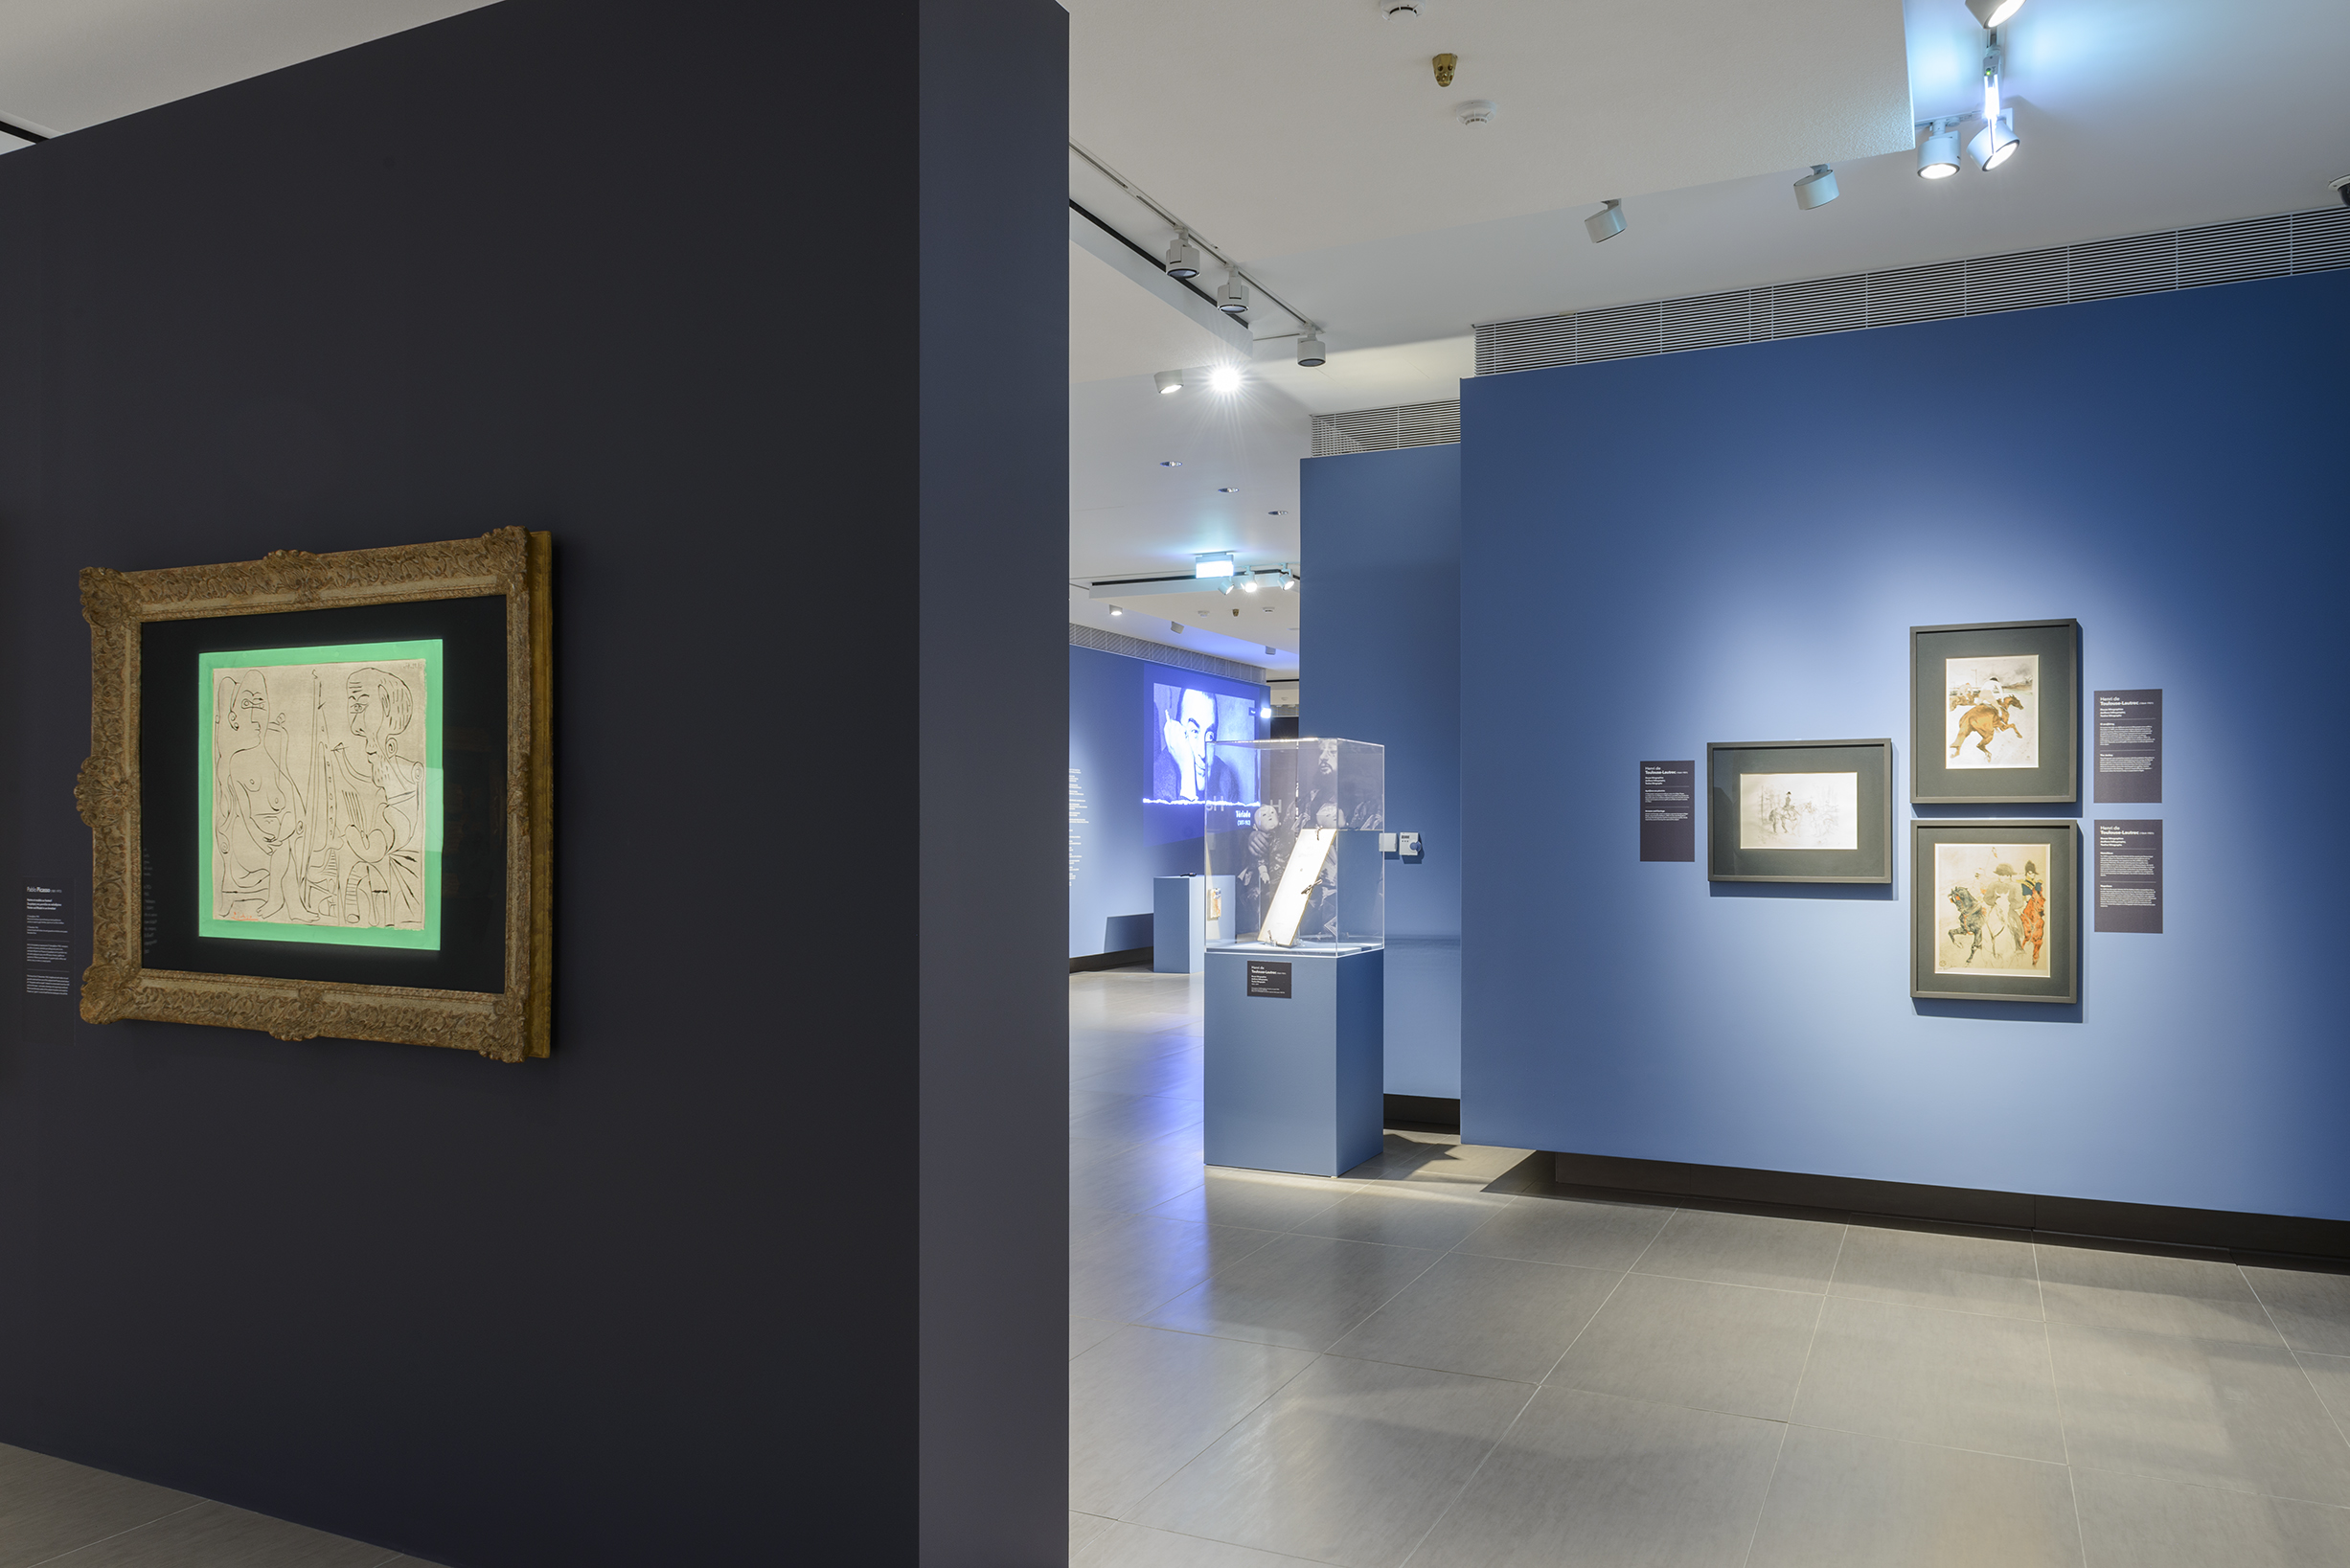 Vue de l'exposition avec des dessins de Toulouse-Lautrec dans le fond